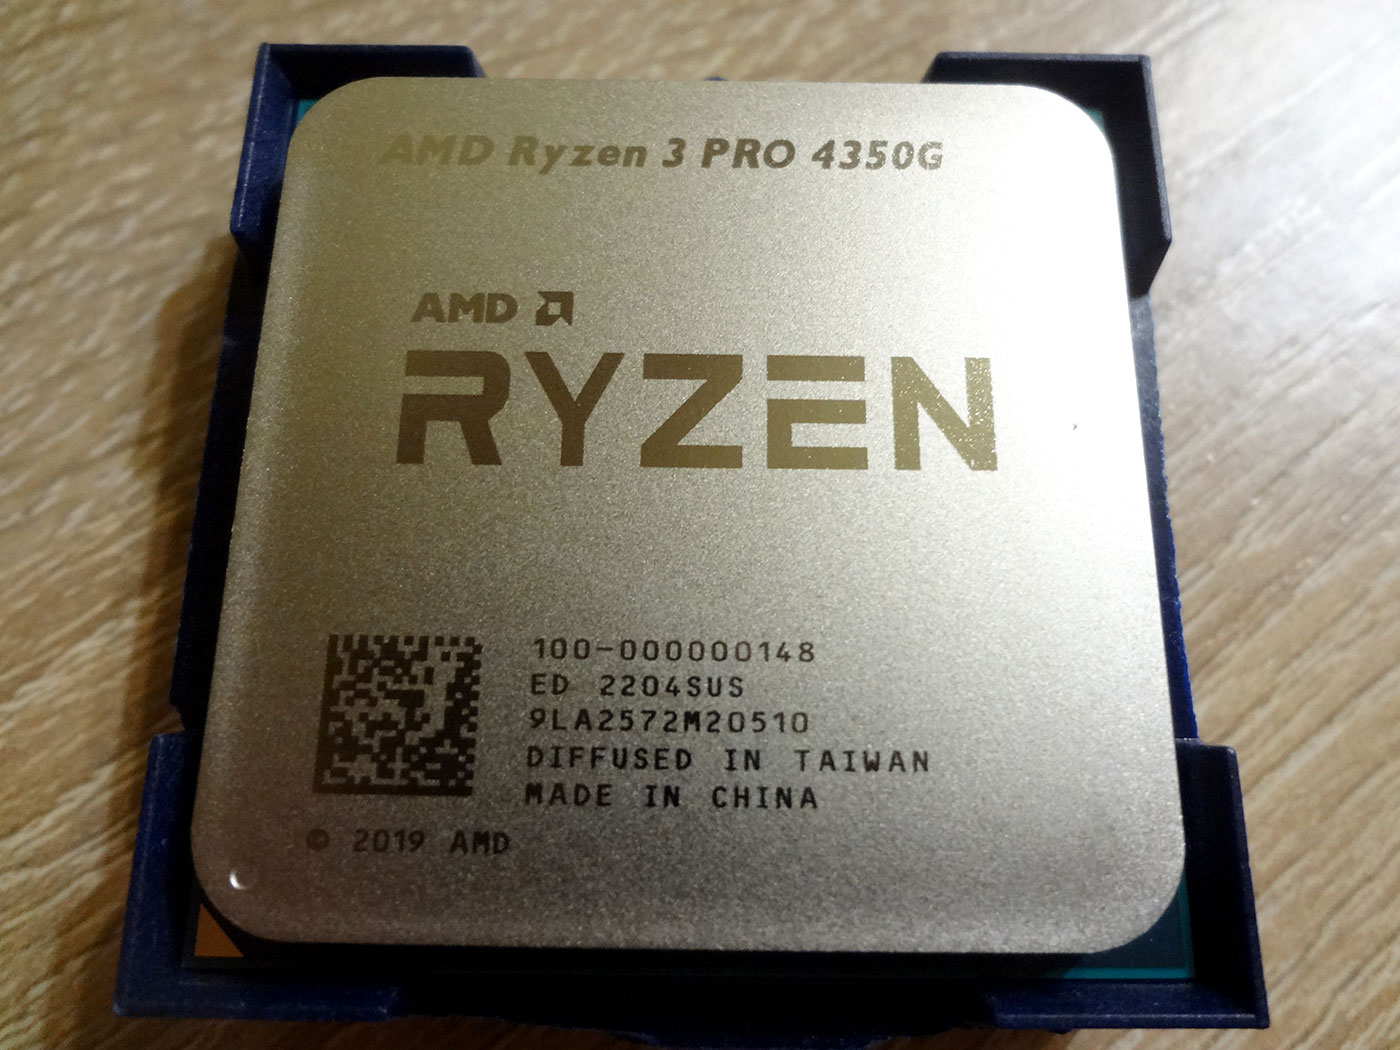 3 pro 4350g. AMD Ryzen 3 Pro 4350g am4, 4 x 3800 МГЦ. Ryzen 3 4350g Pro в 3d. Процессор AMD. AMD Ryzen 3 Pro 4350g OEM (С кулером).